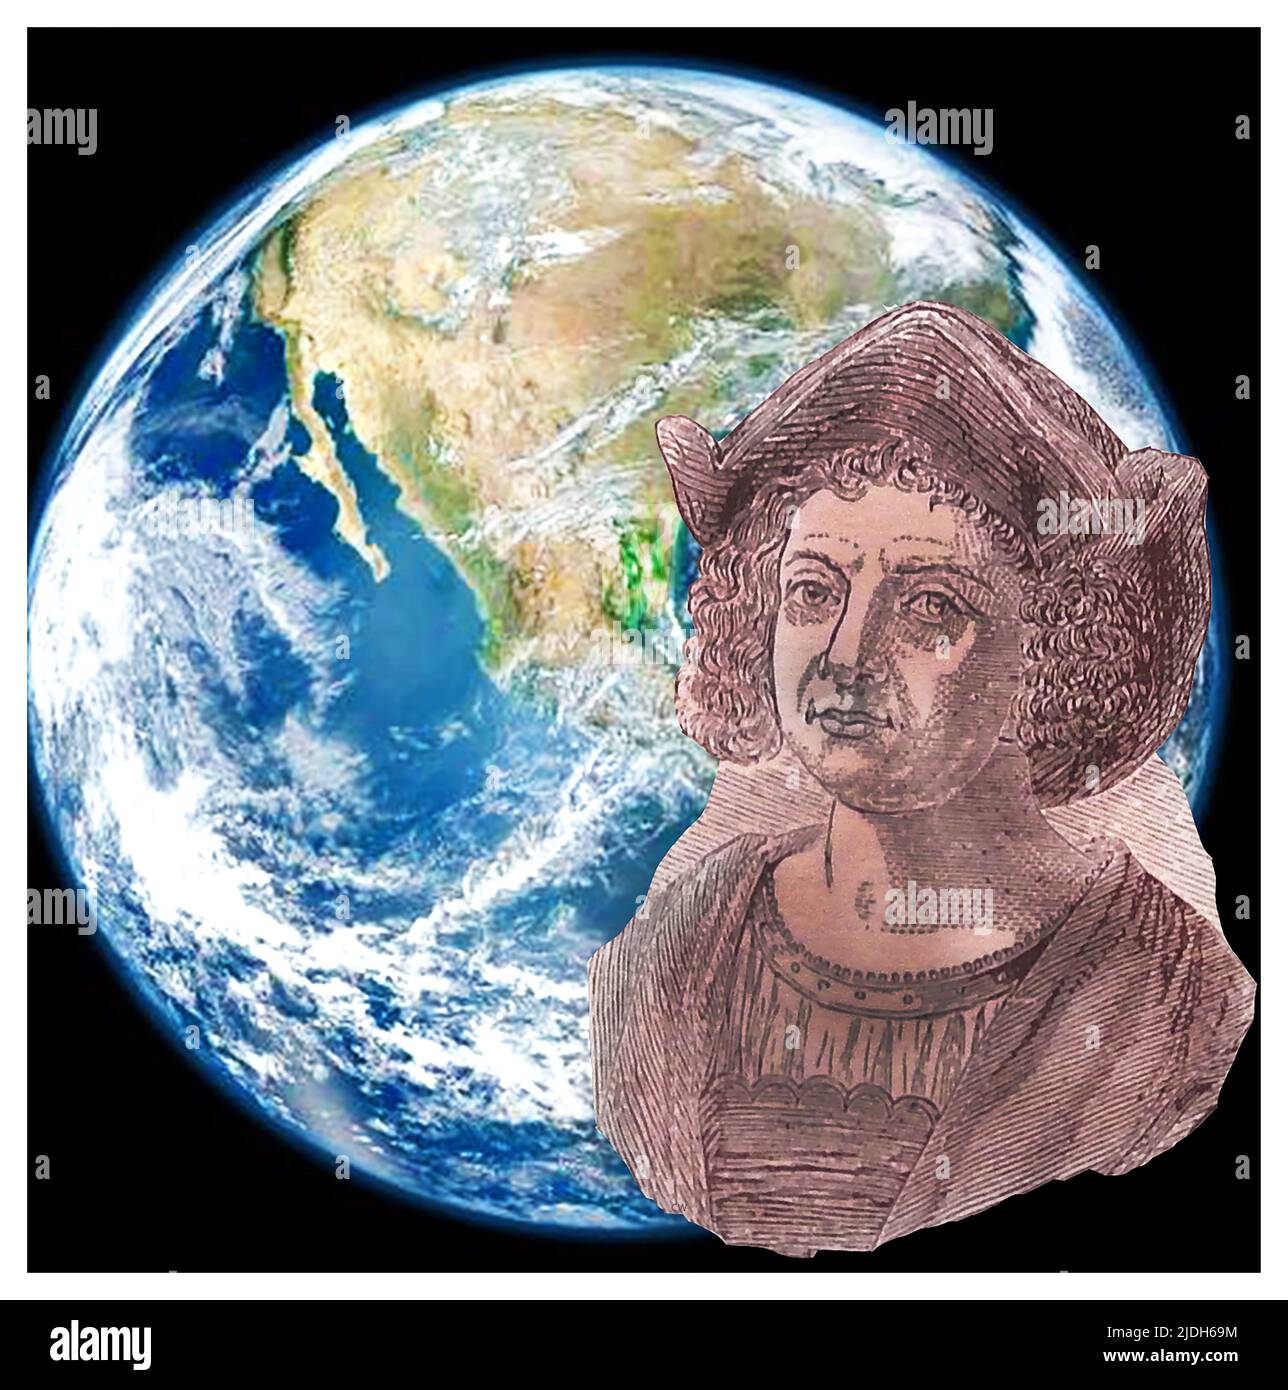 Ein Vintage-Stich von Christopher Columbus / Christophorus Columbus, geboren in Genua, italienischer Entdecker (1451-1506), überlagert auf einem modernen Bild der Erde aus dem Weltraum, das den amerikanischen Kontinent zeigt, zu dem er auf seinen vier Reisen über den Atlantik segelte. Kolumbus diente 1. als Gouverneur der indischen Inseln (1492–1499) --: UN'incisione d'epoca di Cristoforo Colombo genovese nato, esploratore italiano (1451-1506) sovrapposta a un quadro moderno del continente americano, ha navigato verso i suoi 4 viaggi attraverso l'Atlantico. Colombo servì Come 1º Governatore delle Indie (1492–1499) Stockfoto